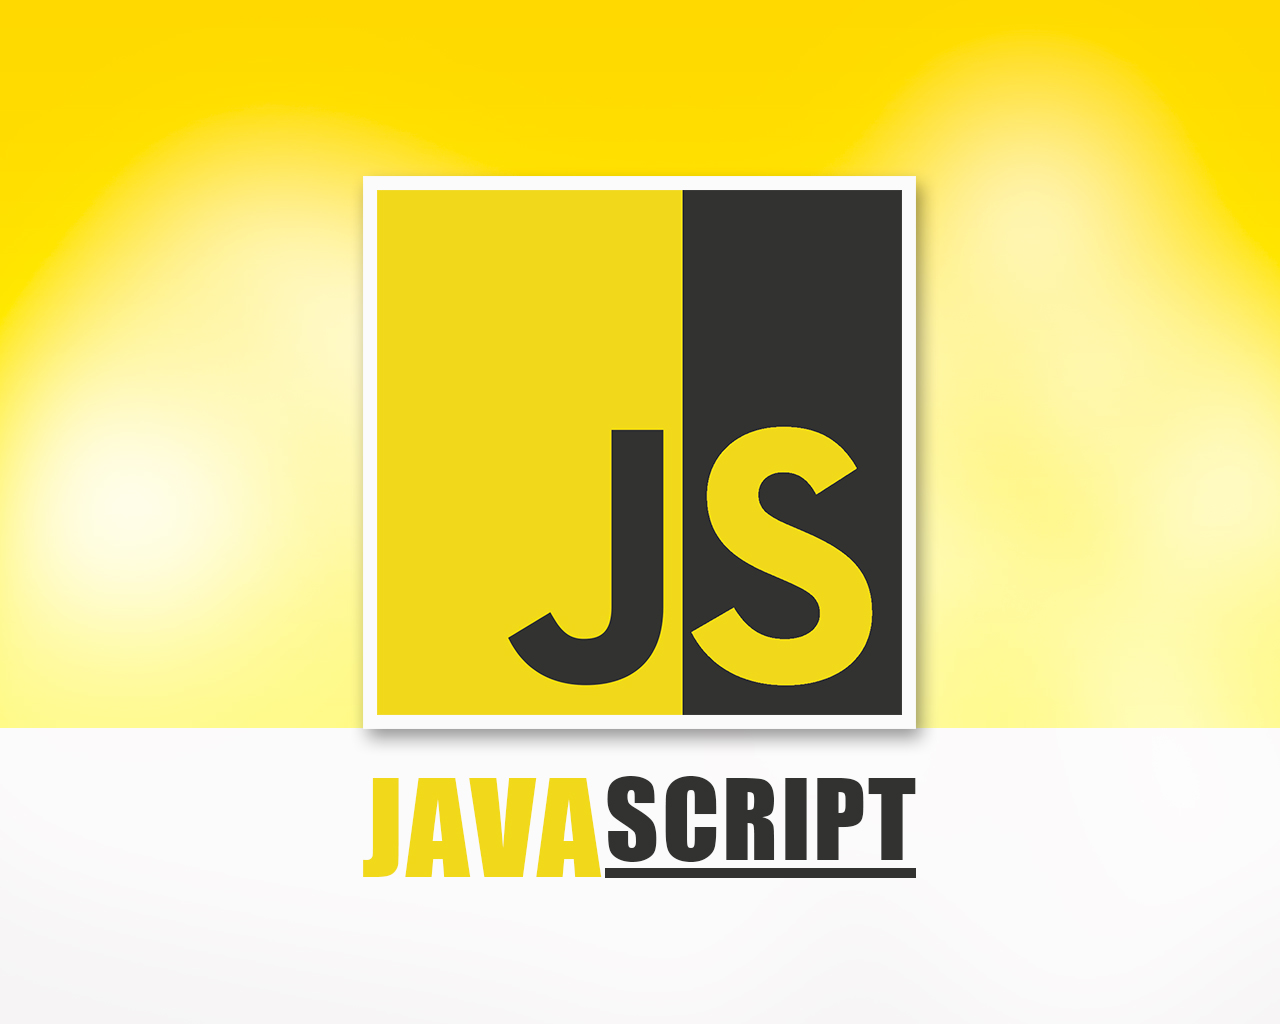 Wallpaper Javascript Programming by artgh on DeviantArt